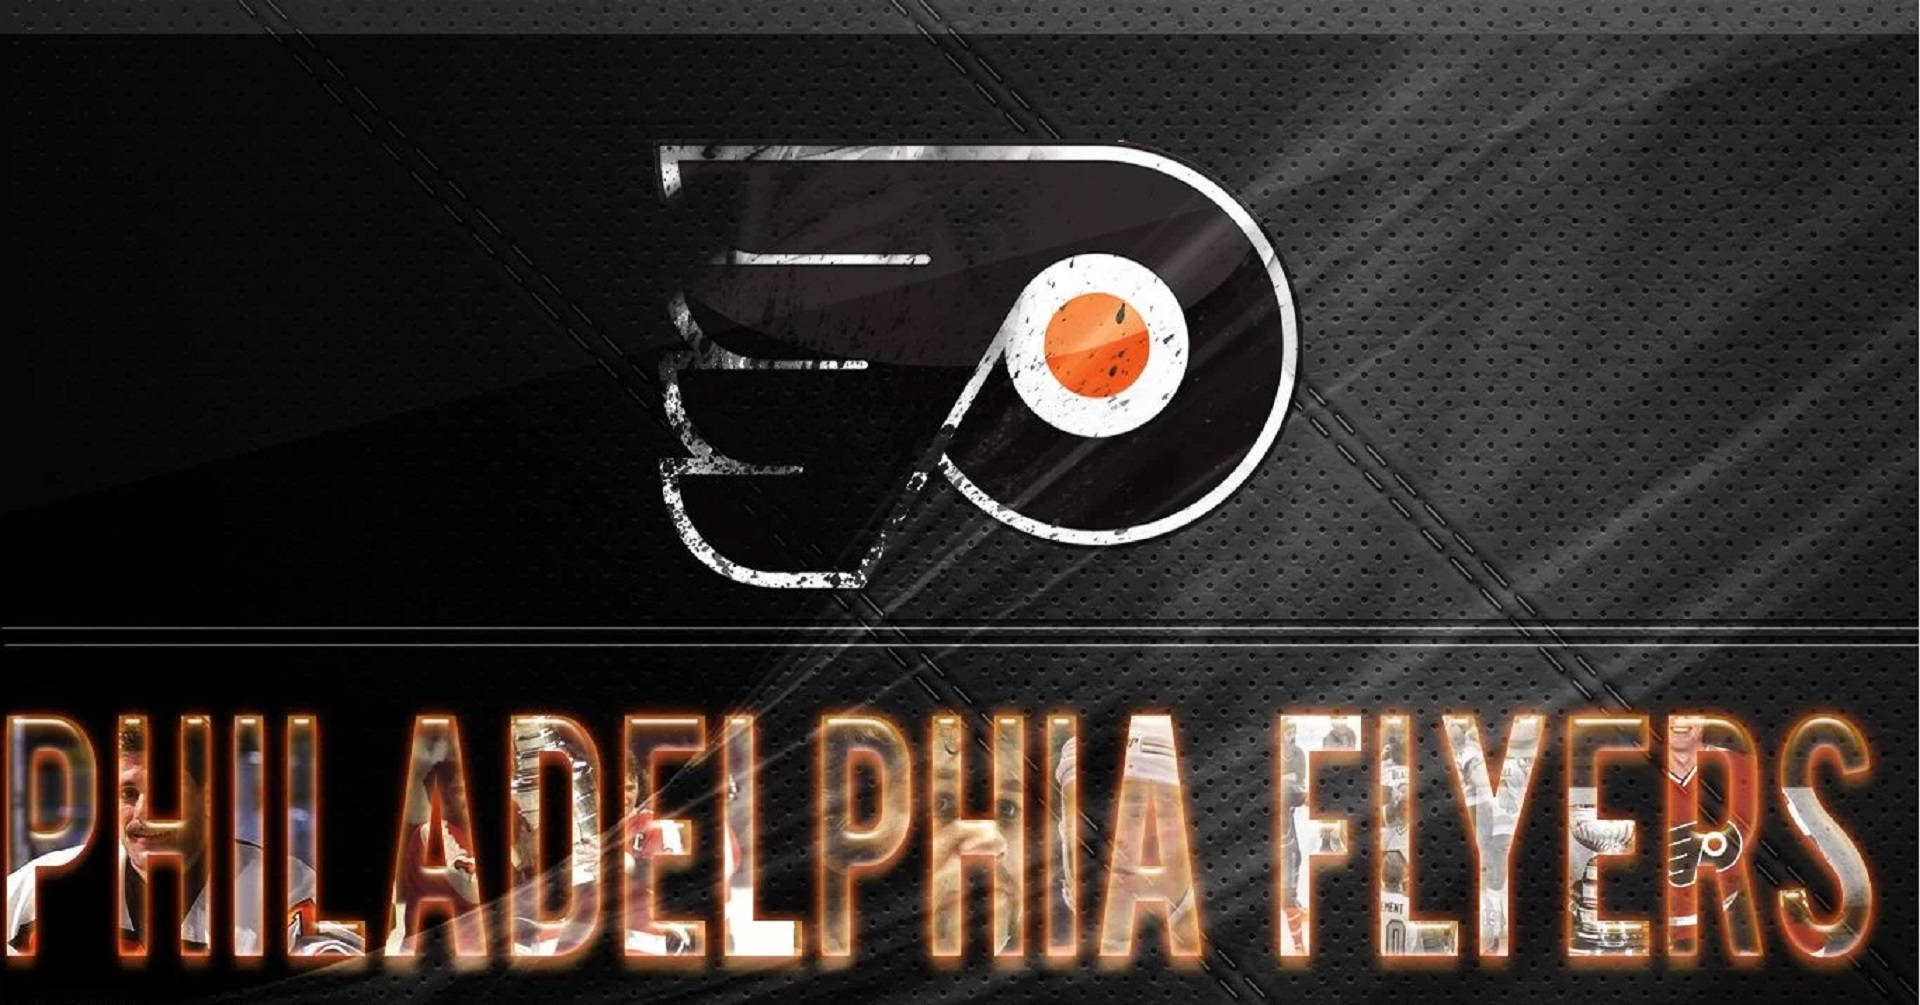 Black Aesthetic Philadelphia Flyers Logo Wallpaper